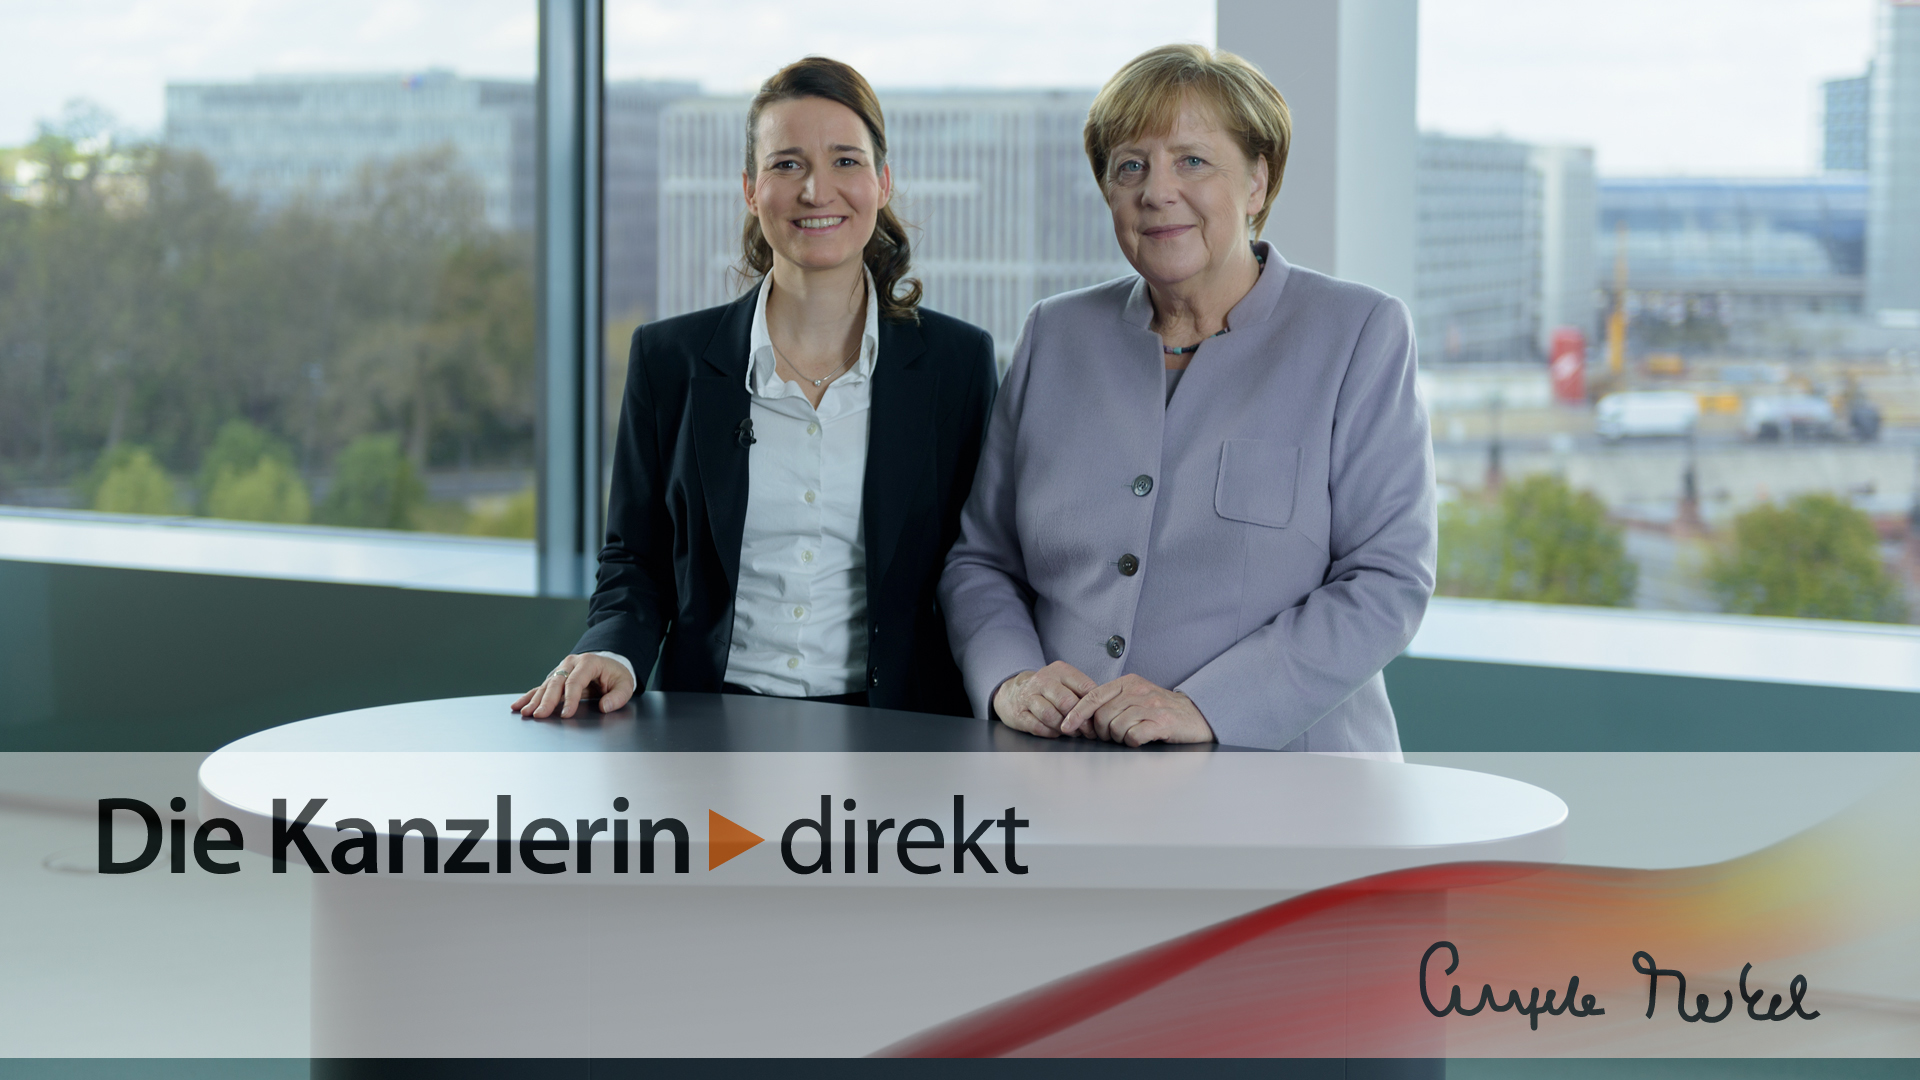 Bundeskanzlerin Merkel im Gespräch mit der Interviewpartnerin.